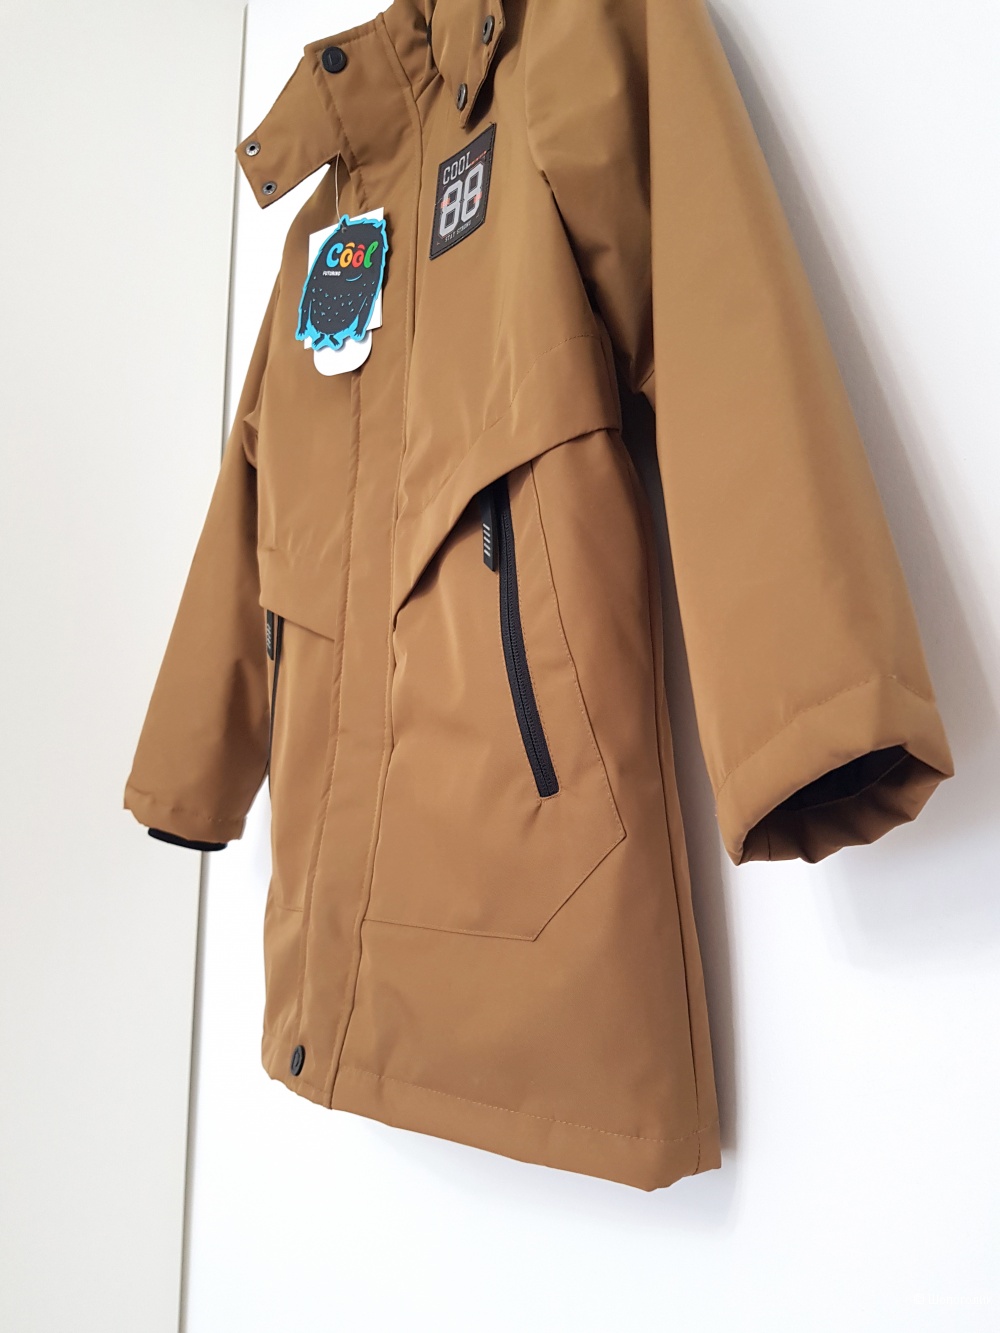 Куртка Cool 134 140 размер